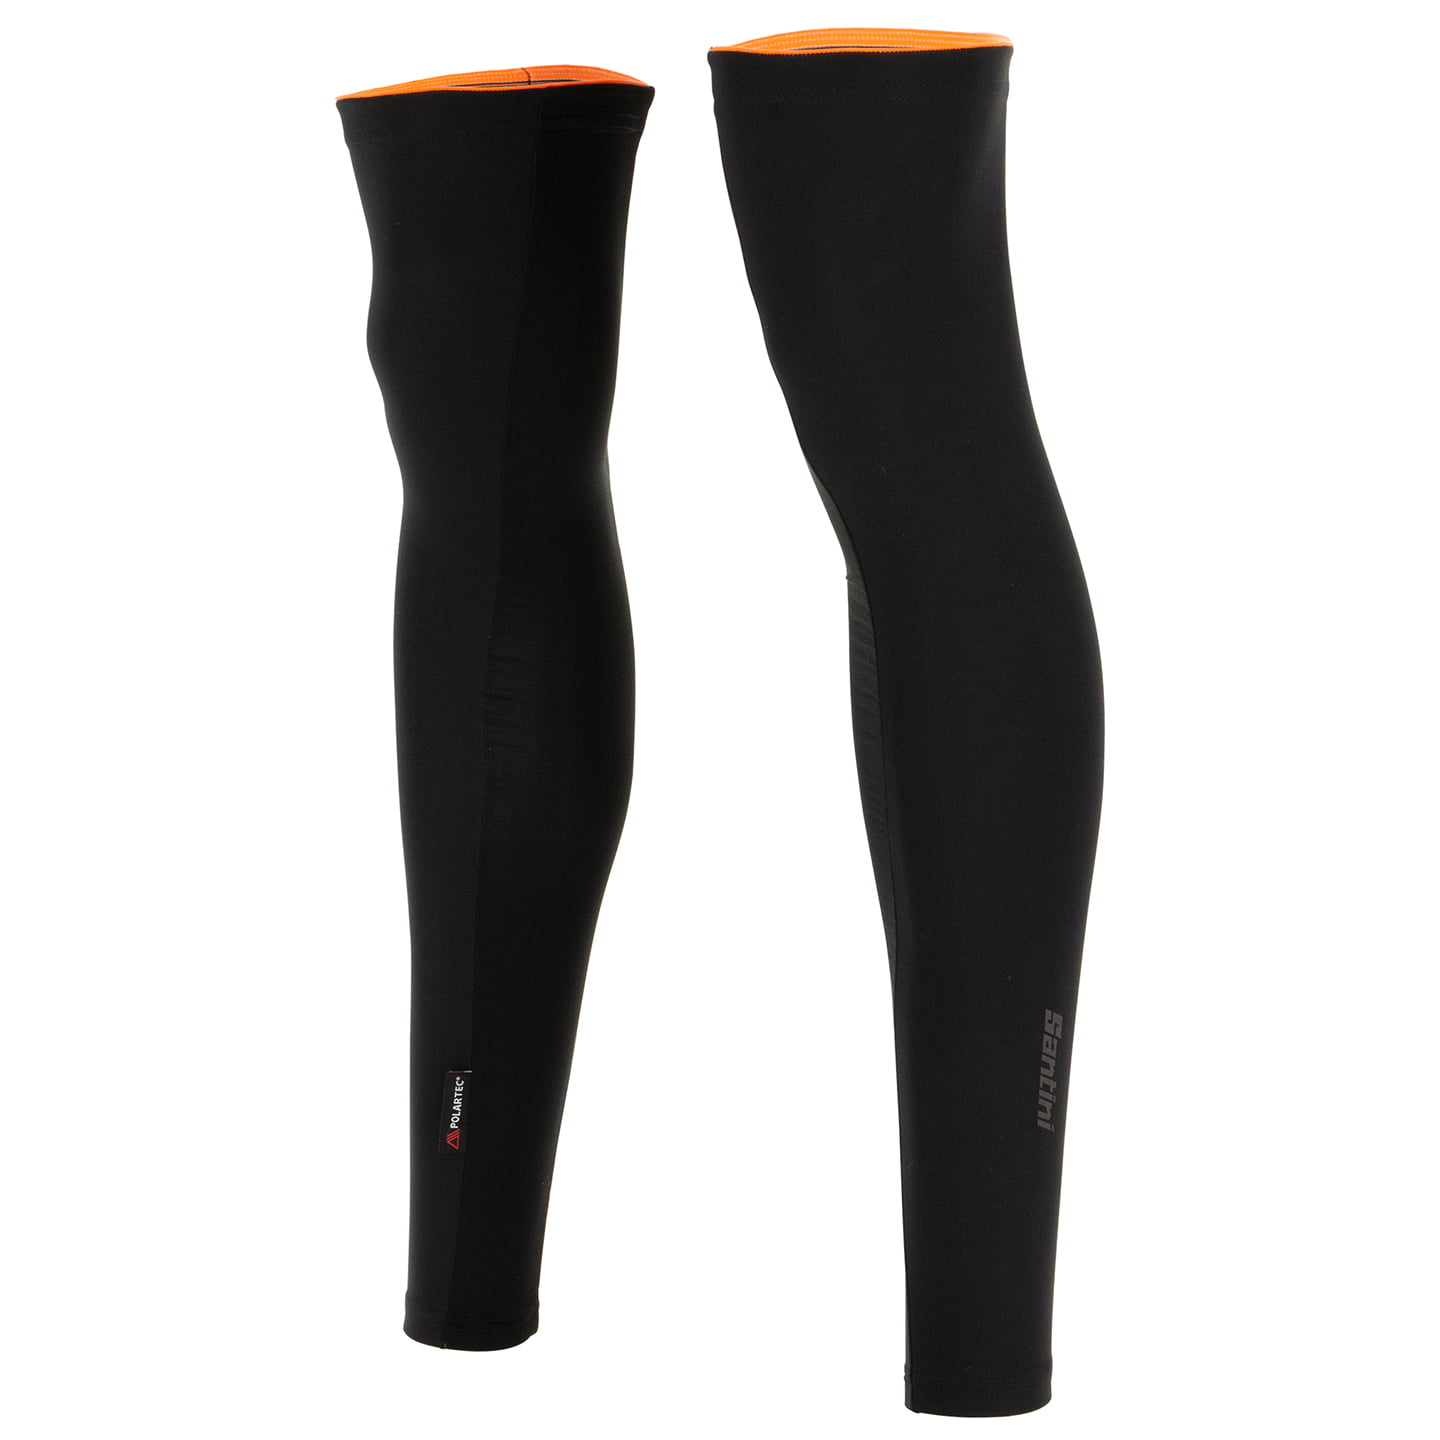 SANTINI Vega Multi Leg Warmers, for men, size M, Cycle clothing